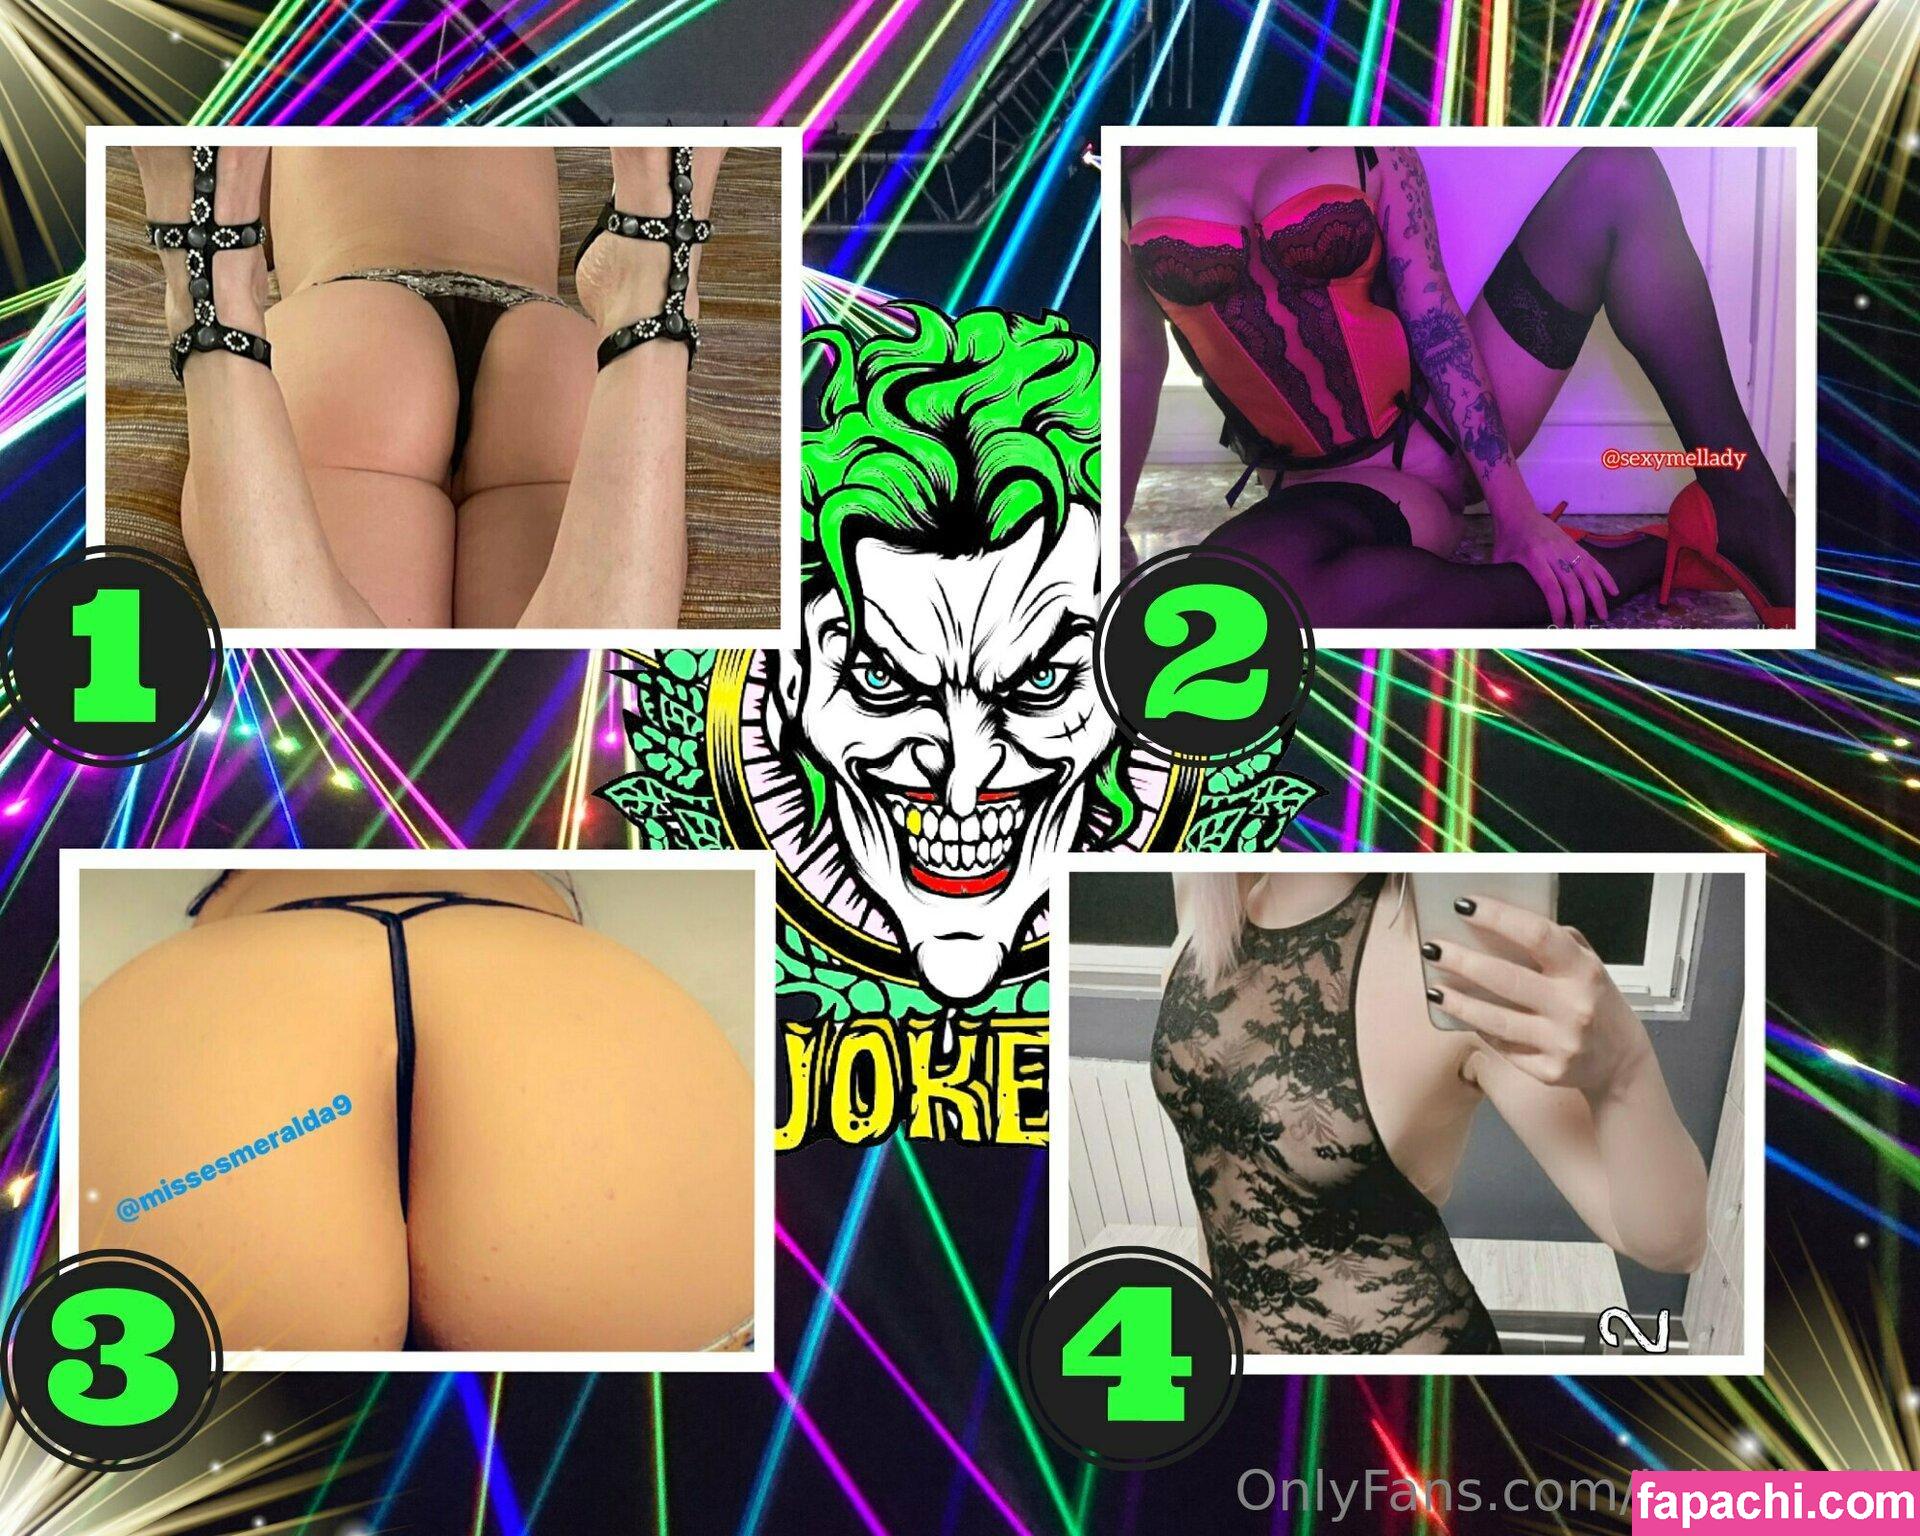 jokeritalia / jokeritalia_ofc leaked nude photo #0419 from OnlyFans/Patreon